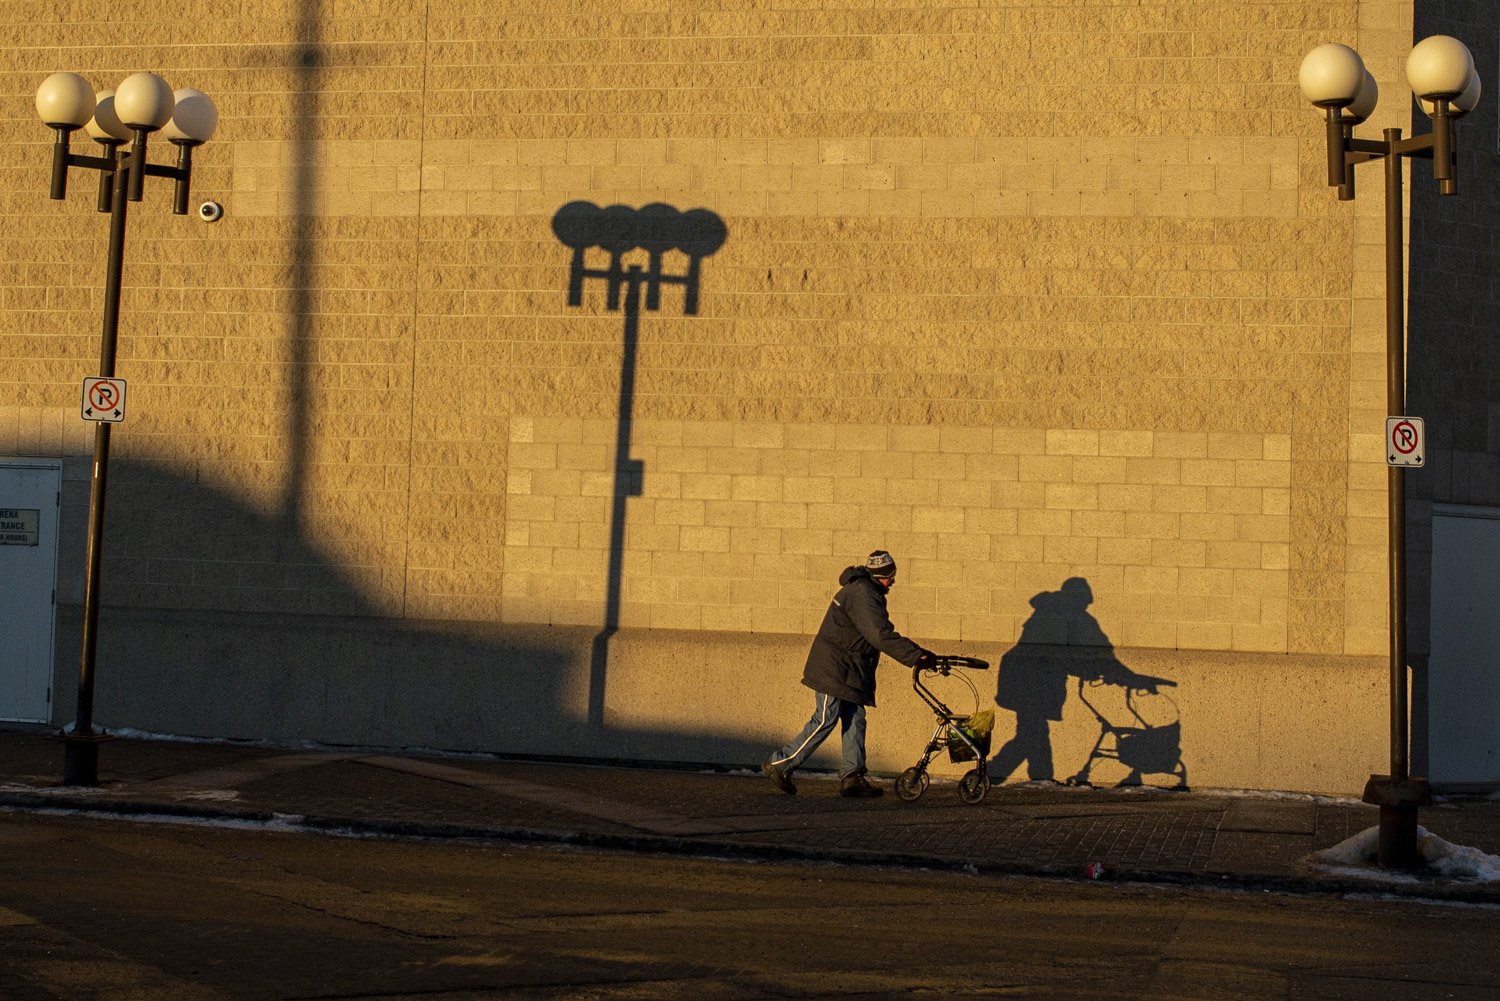  A man and his walker are silhouetted in the early morning light on the wall of a downtown building in Grande Prairie, Alberta.  La silhouette d’un homme et sa marchette est projetée sur un mur en brique tôt le matin dans le centre-ville de Grande Pr